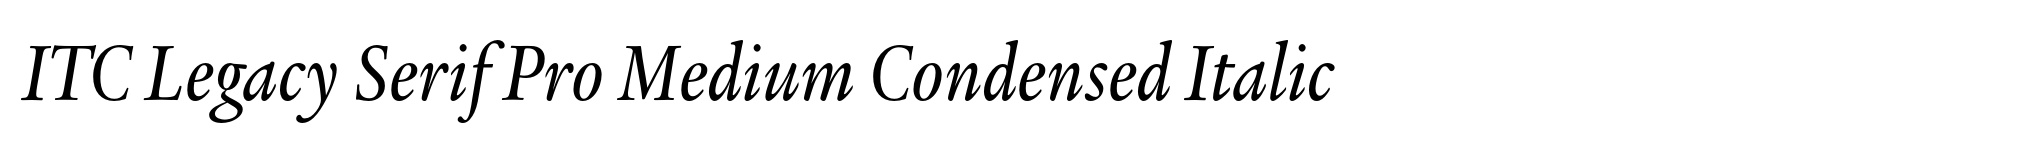 ITC Legacy Serif Pro Medium Condensed Italic image